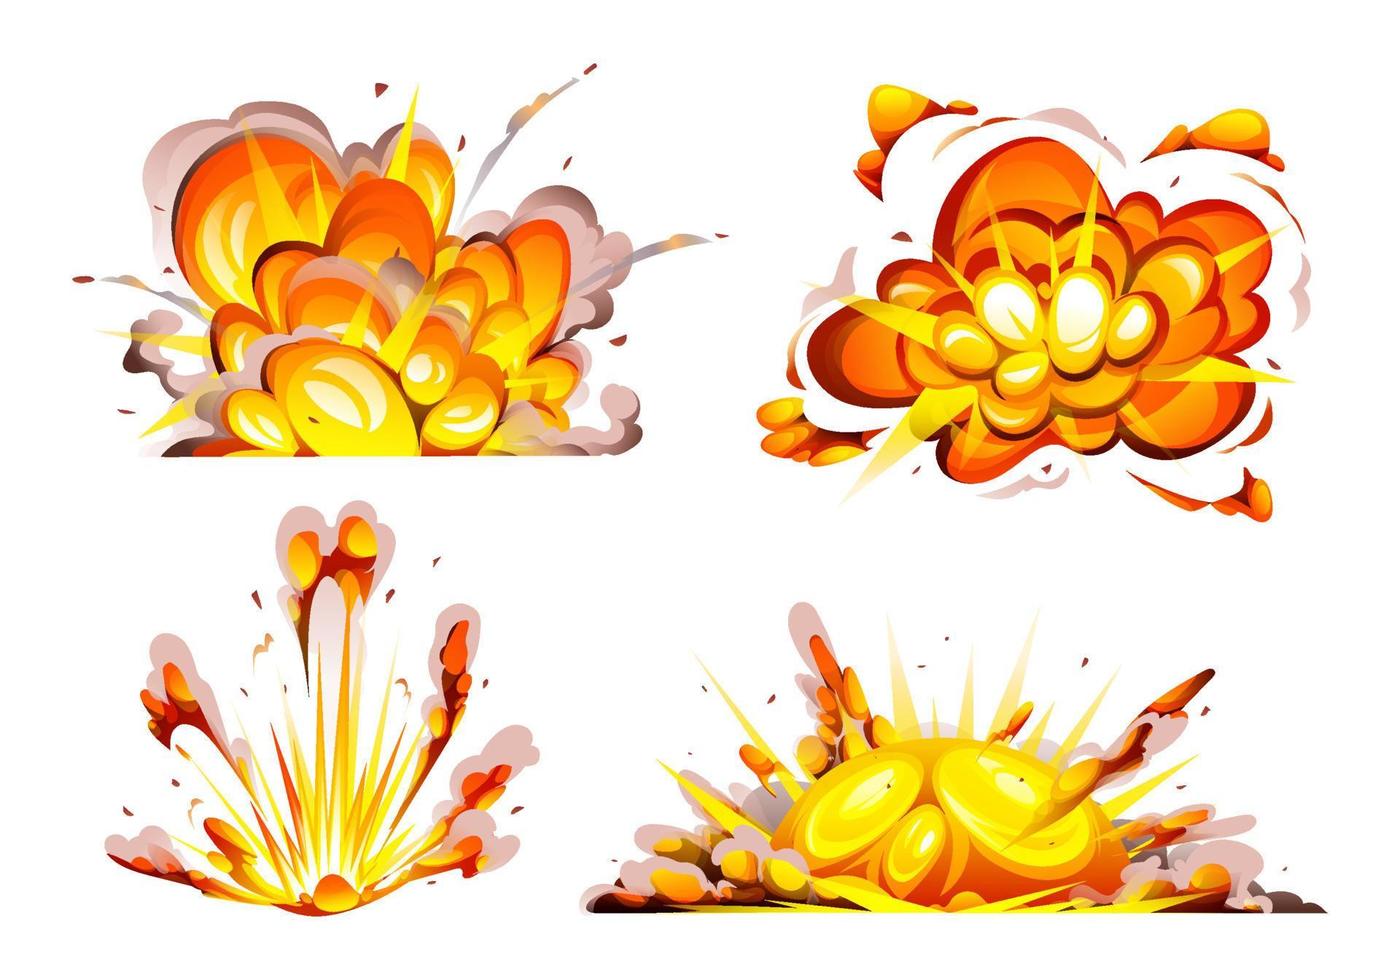 impostato di bomba esplosione con Fumo, fiamma e particelle isolato cartone animato illustrazione vettore